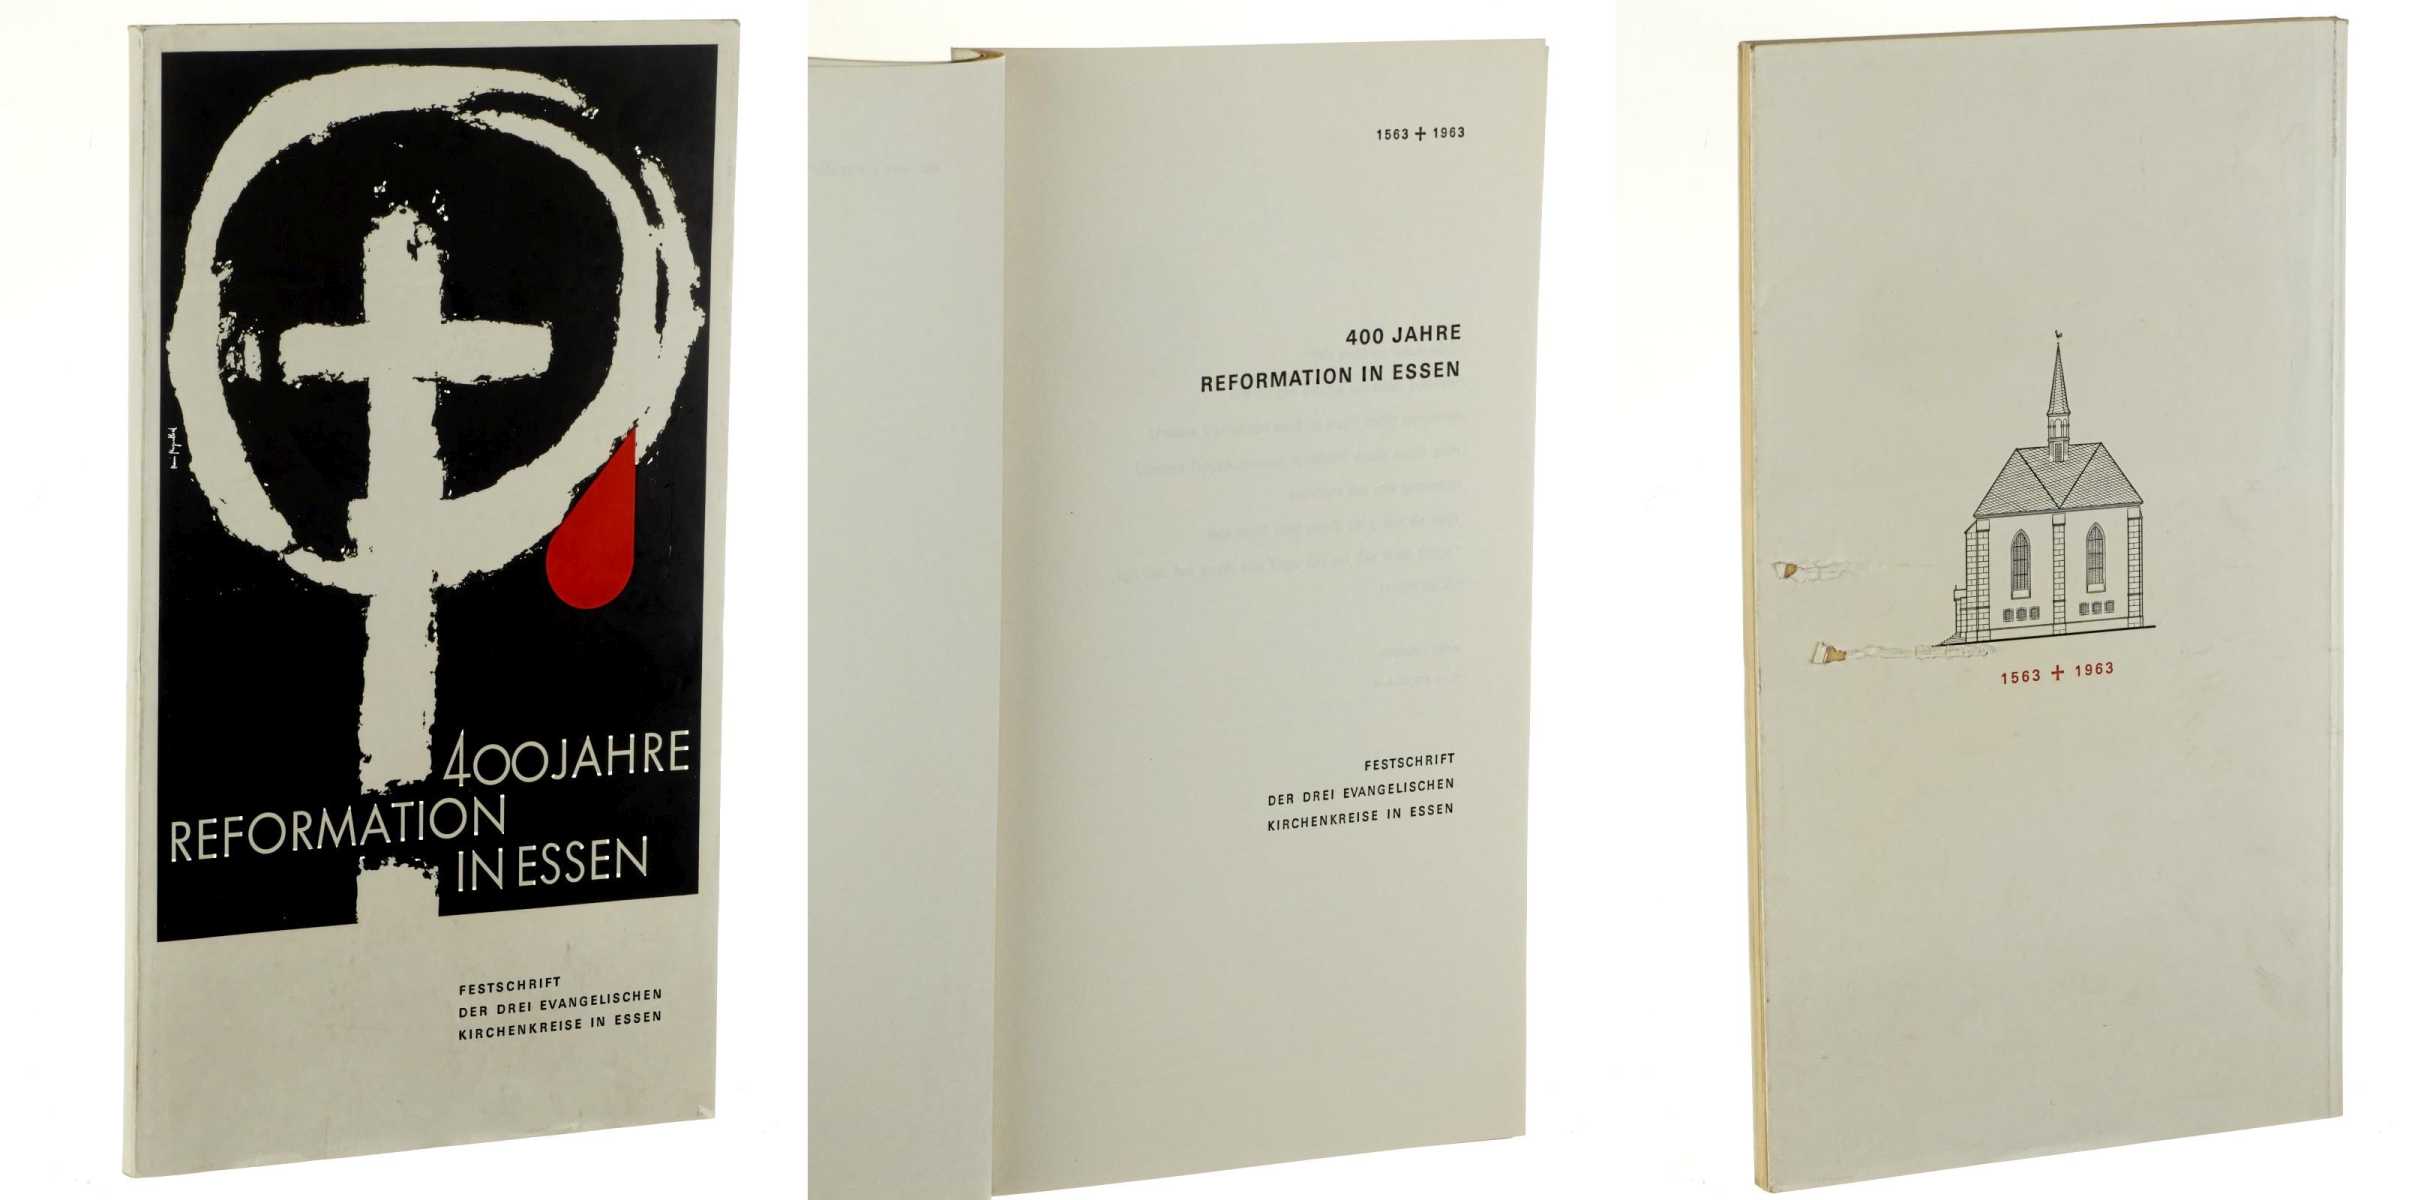   400 Jahre Reformation in Essen. 1563 - 1963. Festschrift der drei evangelischen Kirchenkreise in Essen. 